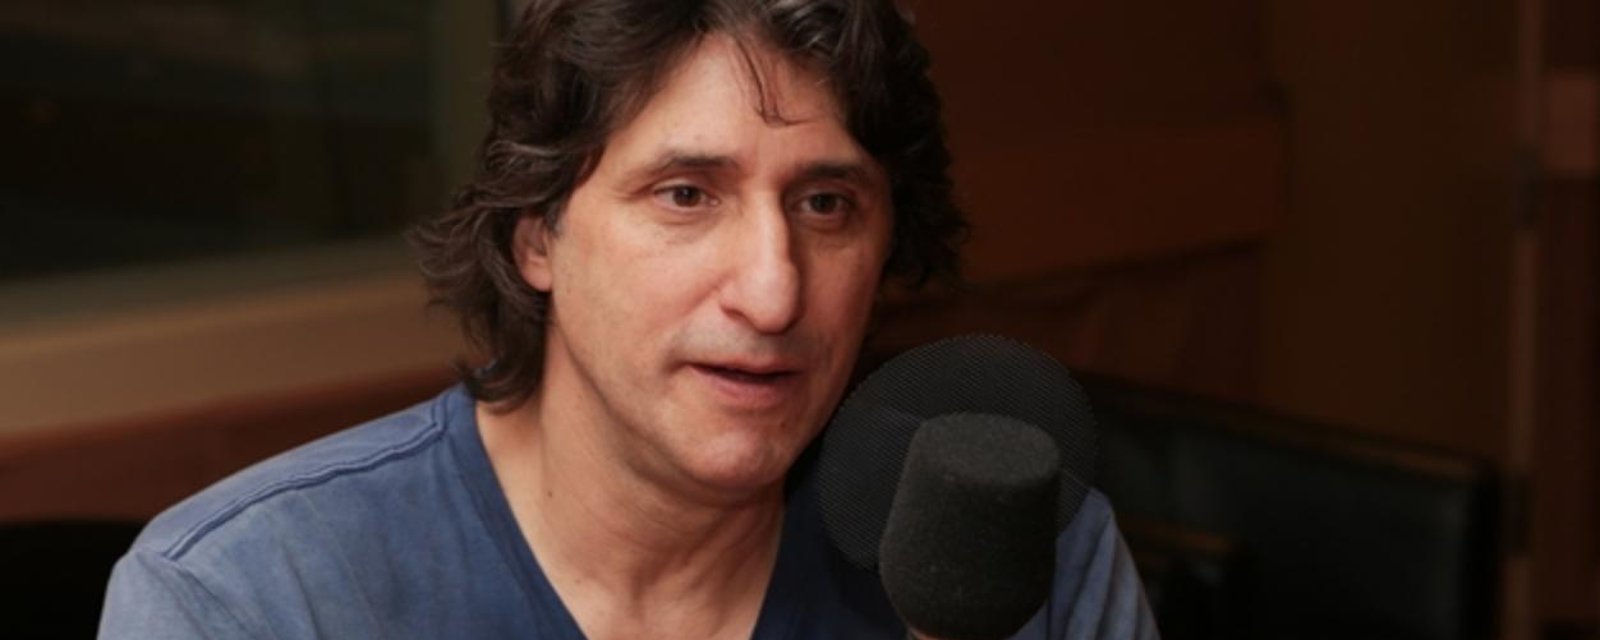 Un acteur québécois espère avoir une nouvelle chance après sa sortie de prison​